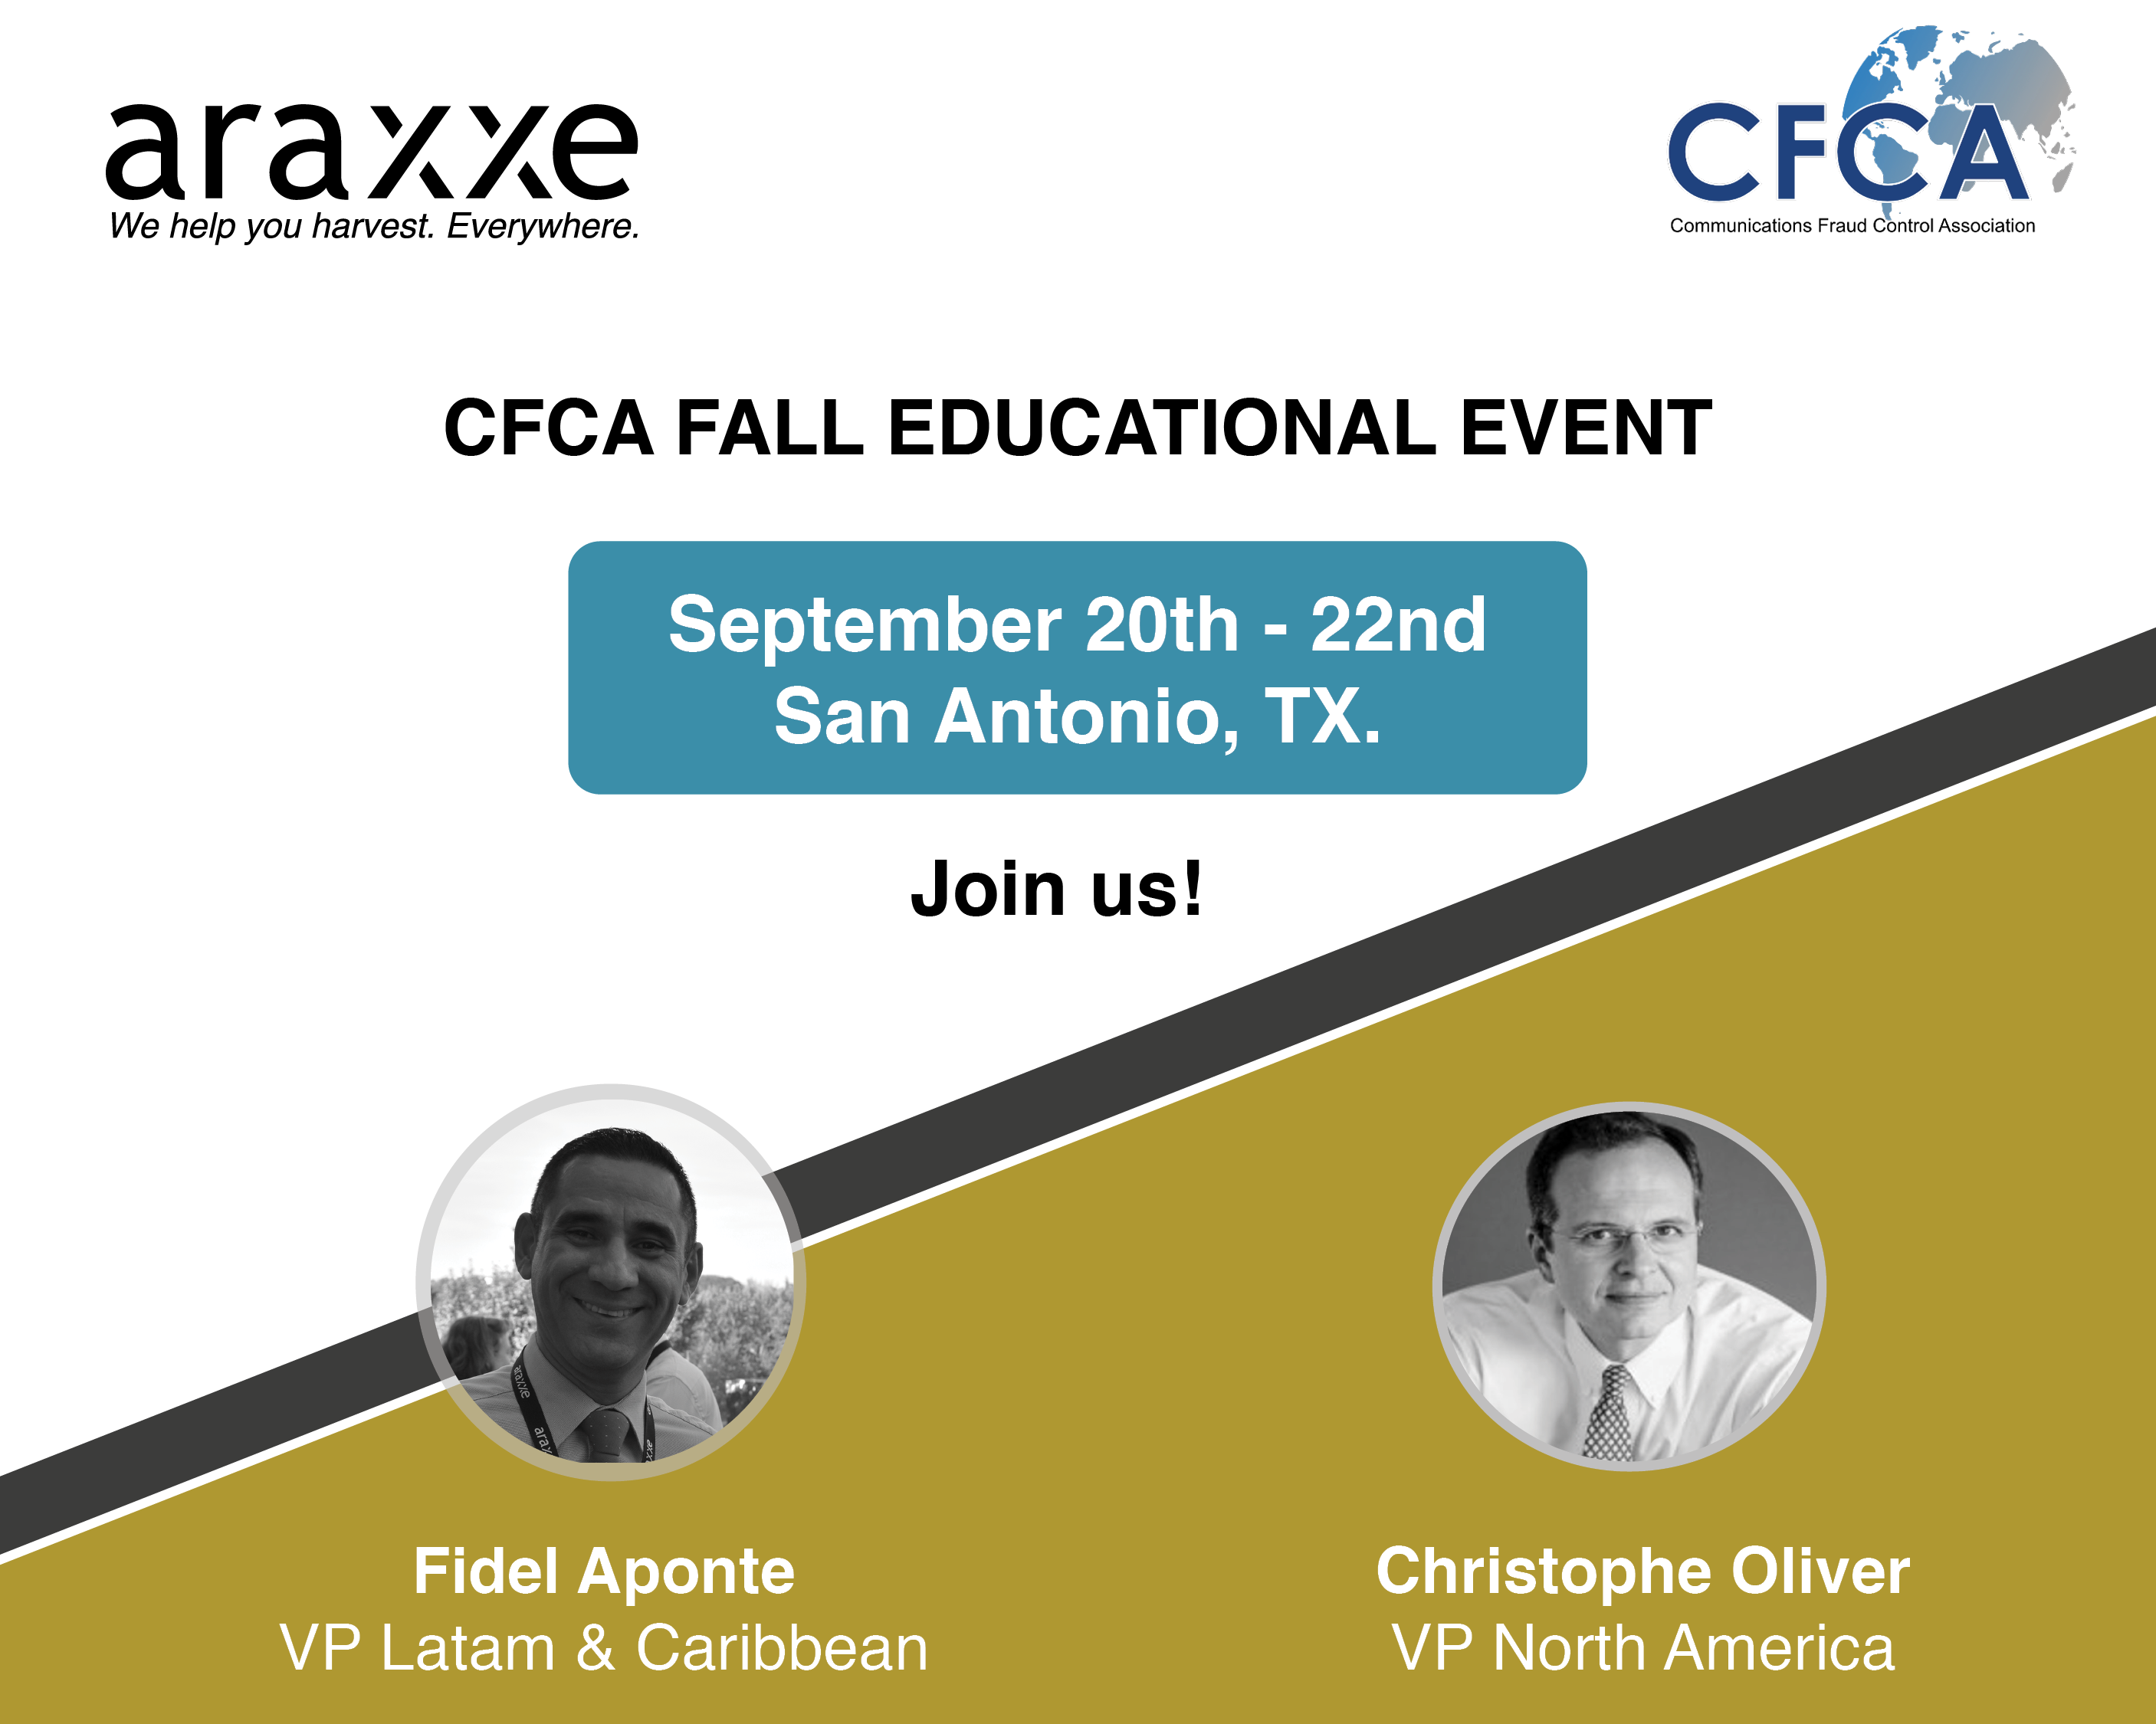 CFCA Fall Educational Event Sept 20-22